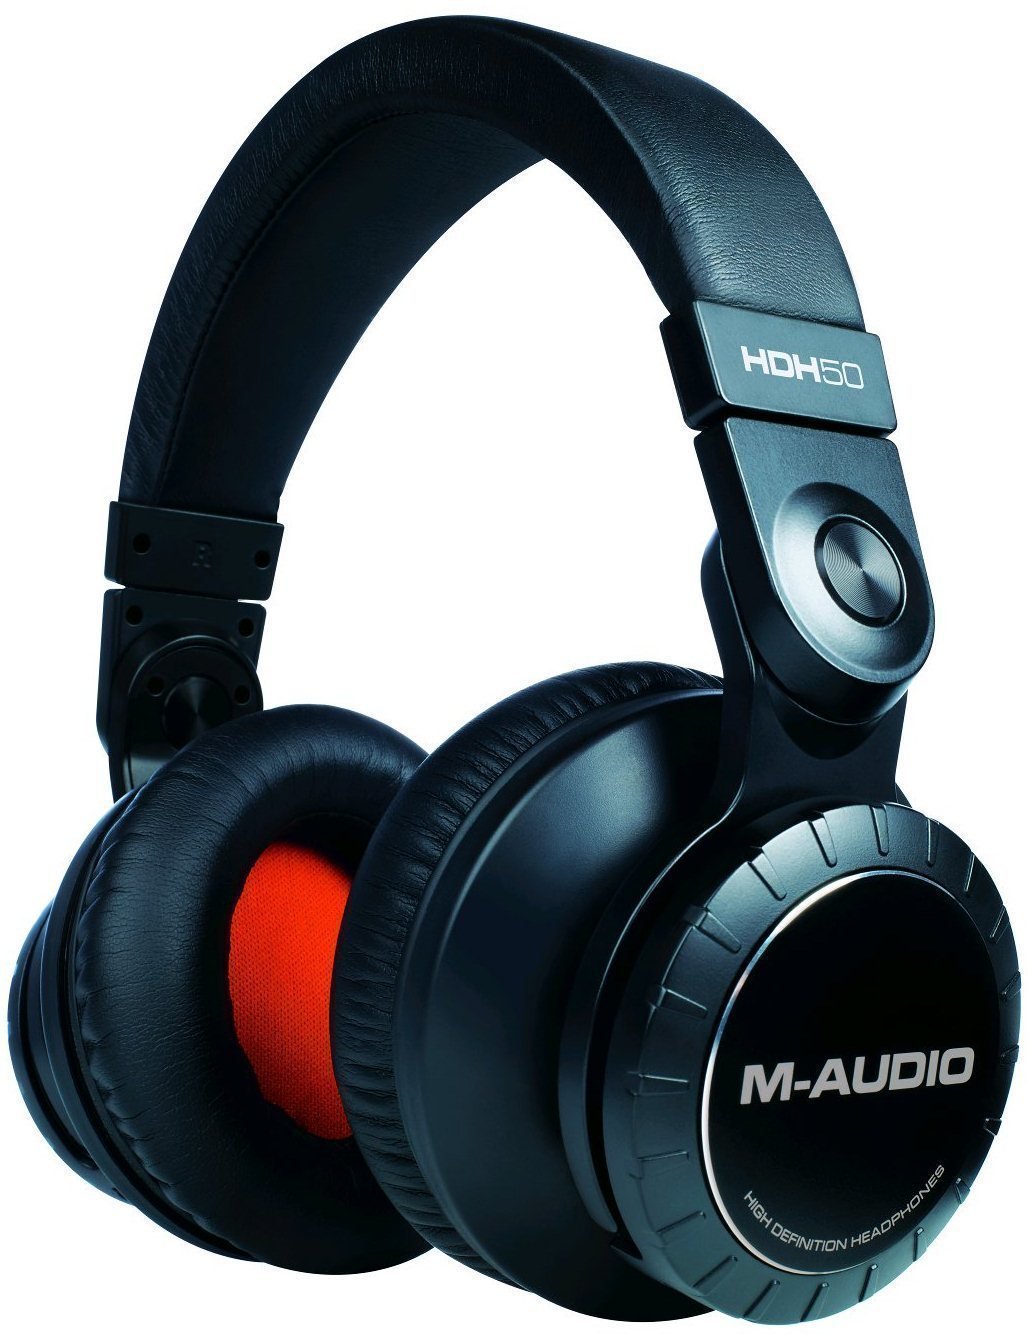 Słuchawki studyjne M-Audio HDH50 High Definition Headphones